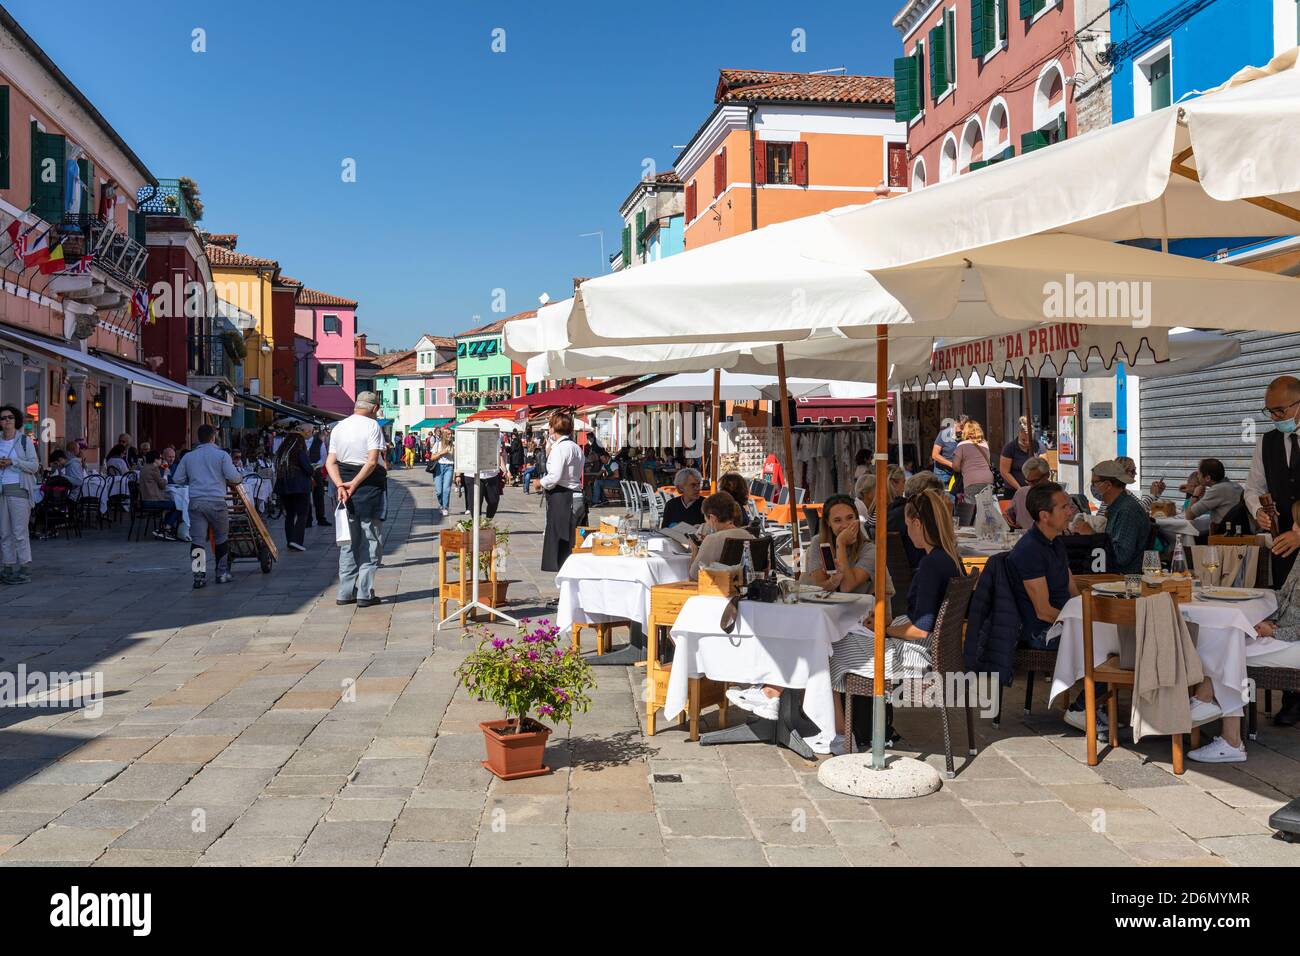 Tourist dining outside at Trattoria da Primo e Paoloin the centre of Baldassare Galuppi Square, Burano, Venice Stock Photo